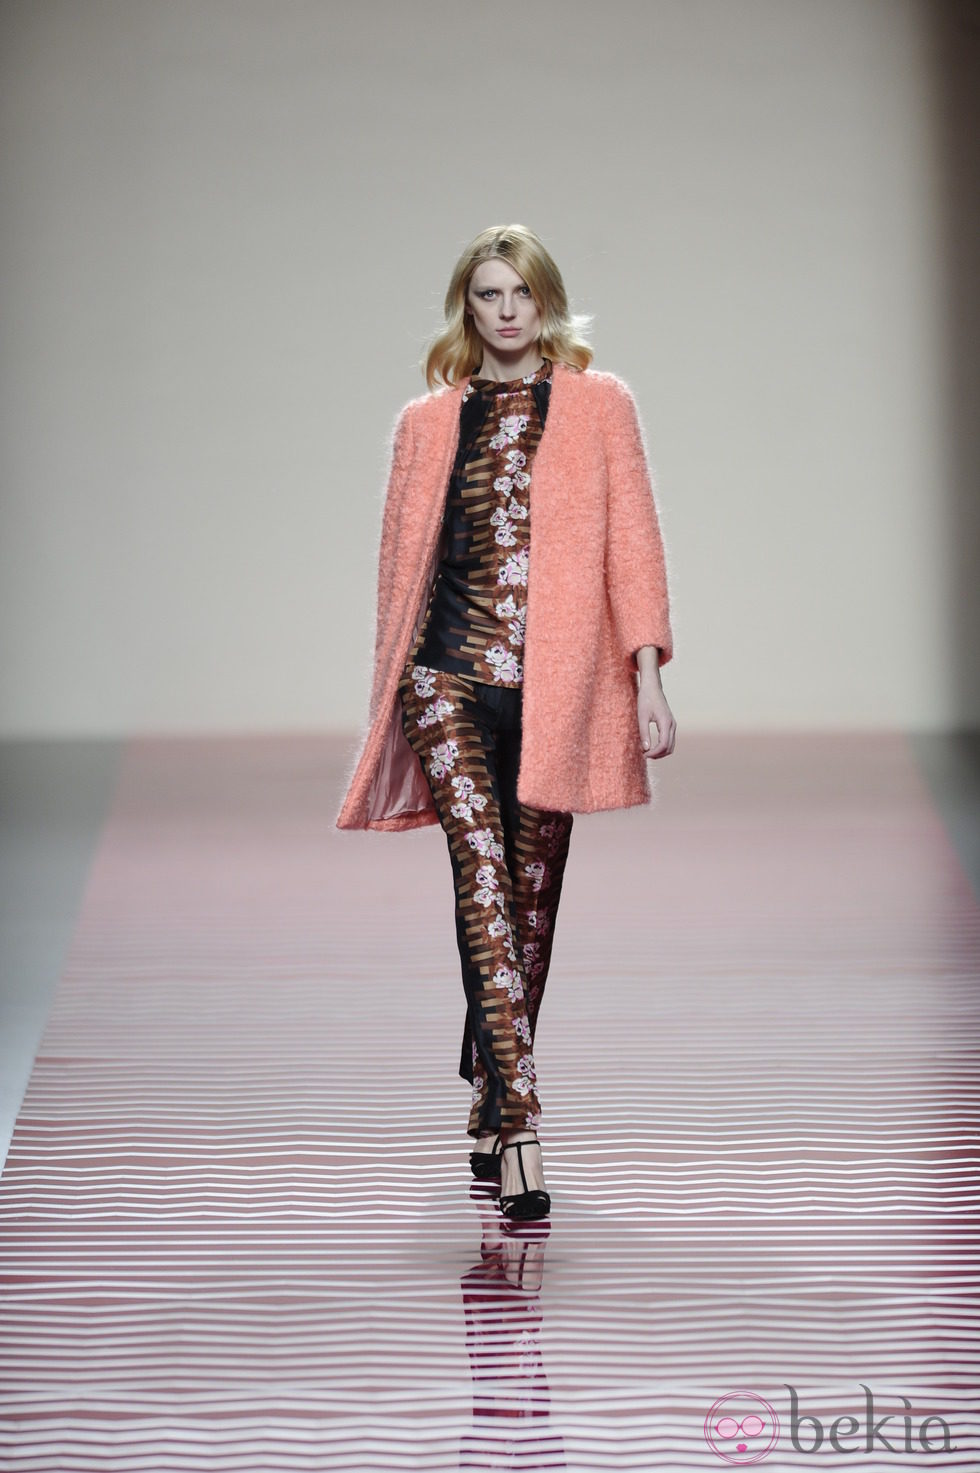 Abrigo color coral de la colección otoño/invierno 2013/2014 de Ailanto en Madrid Fashion Week